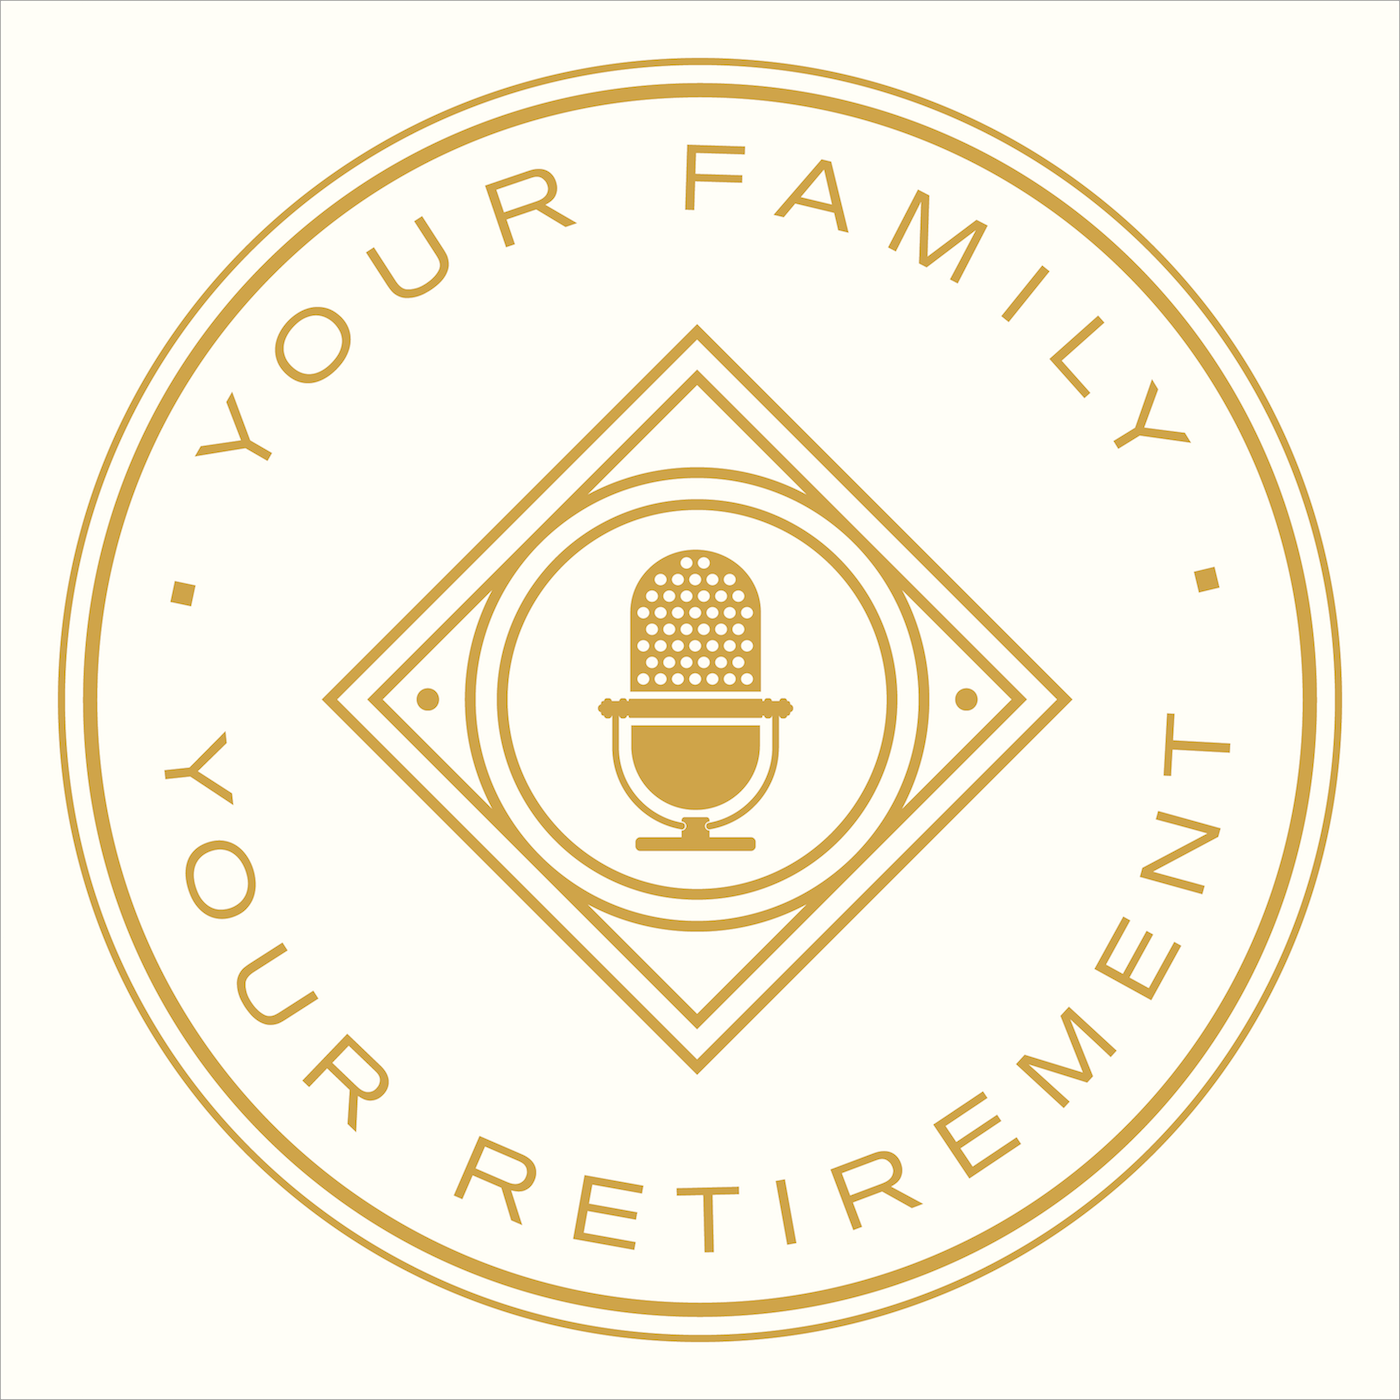 Don't let a market decline affect your retirement